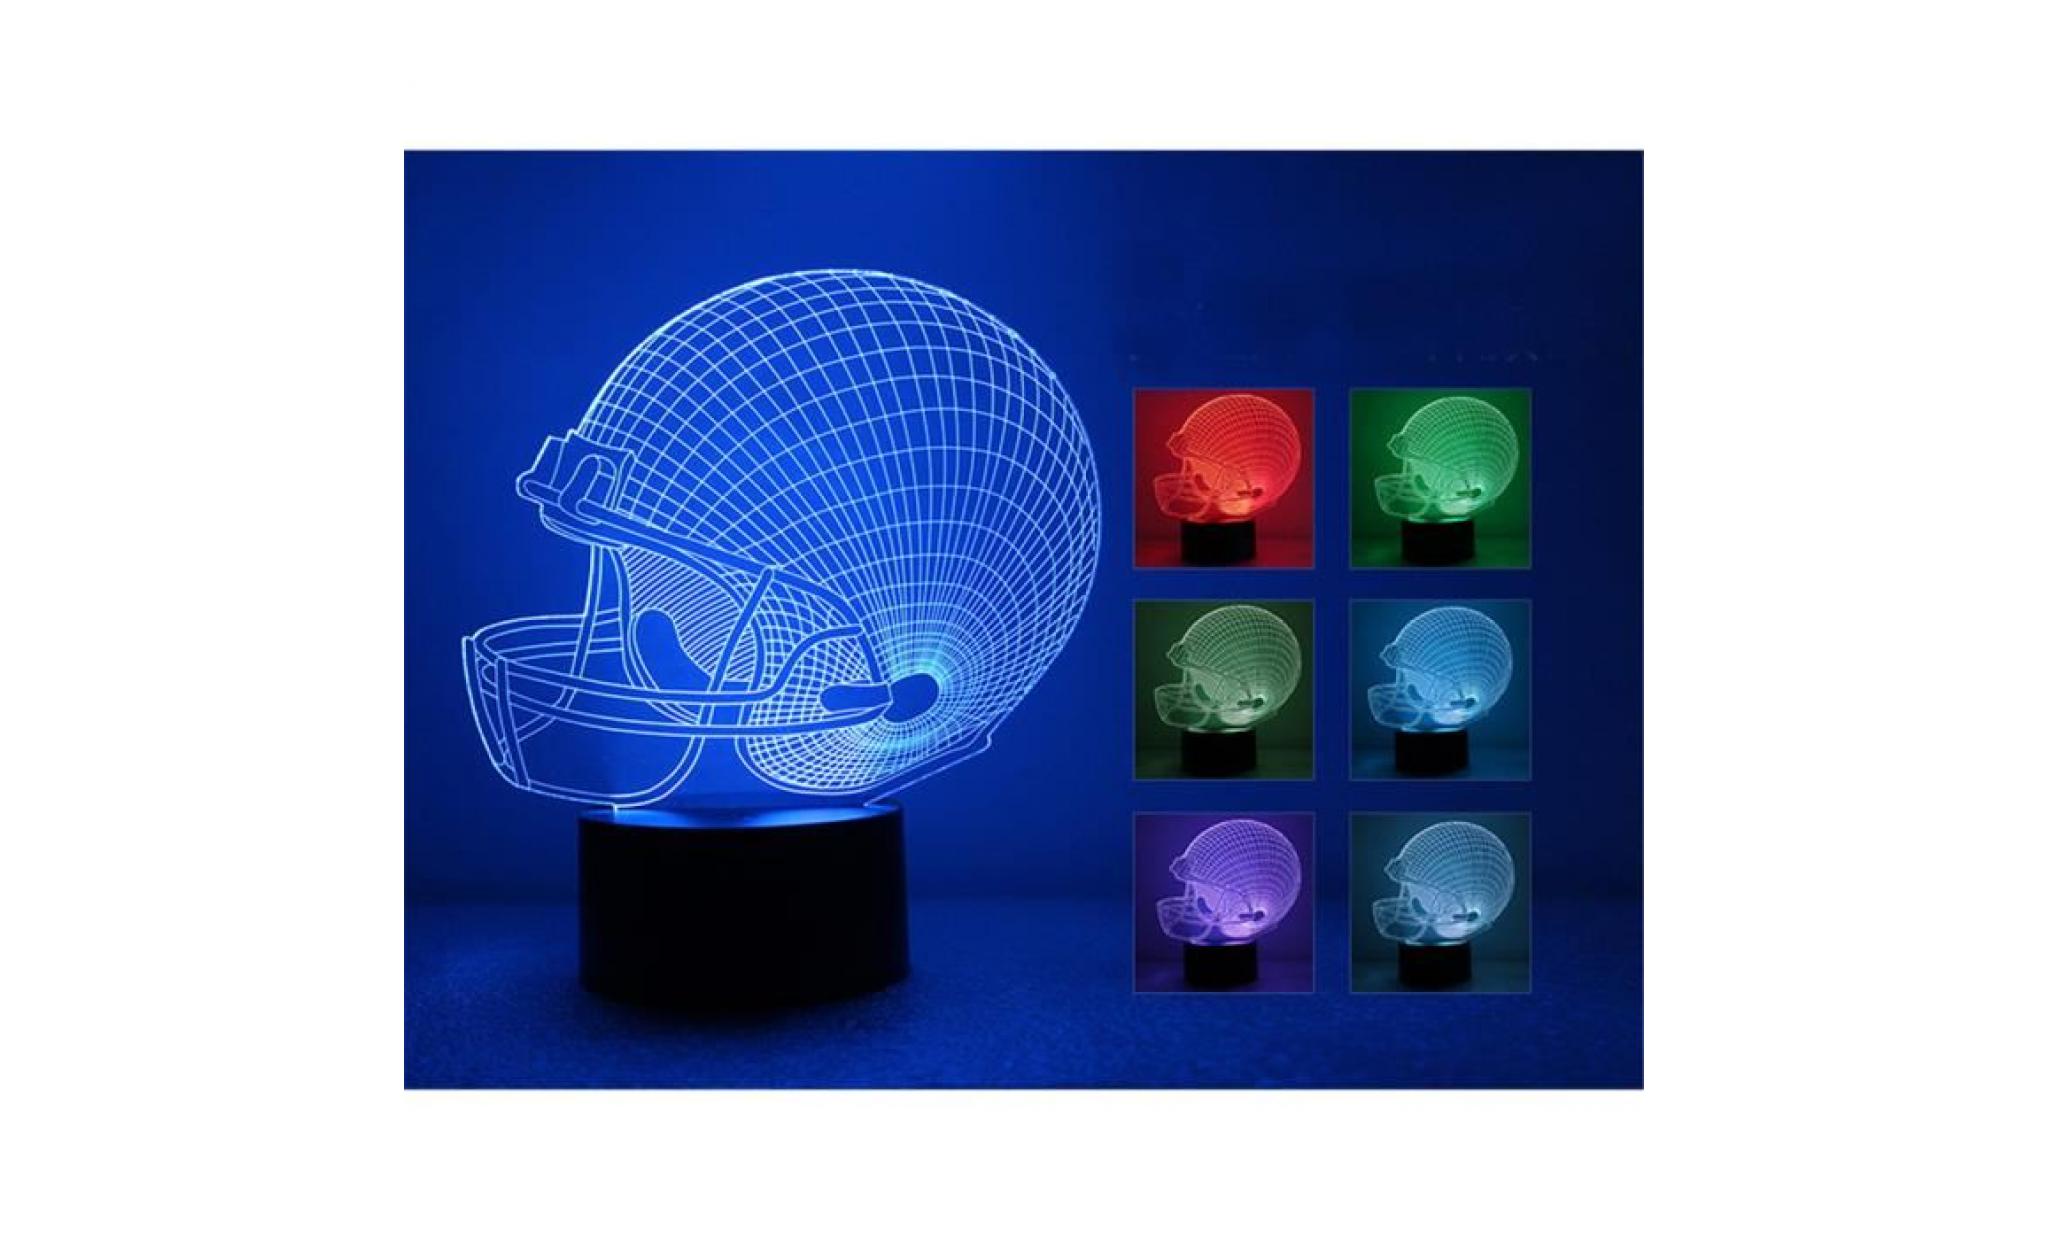 pachasky®le chapeau de football 3d led lampes de lumière de nuit illusion 3d optique 7 couleurs pour la maison@zf40